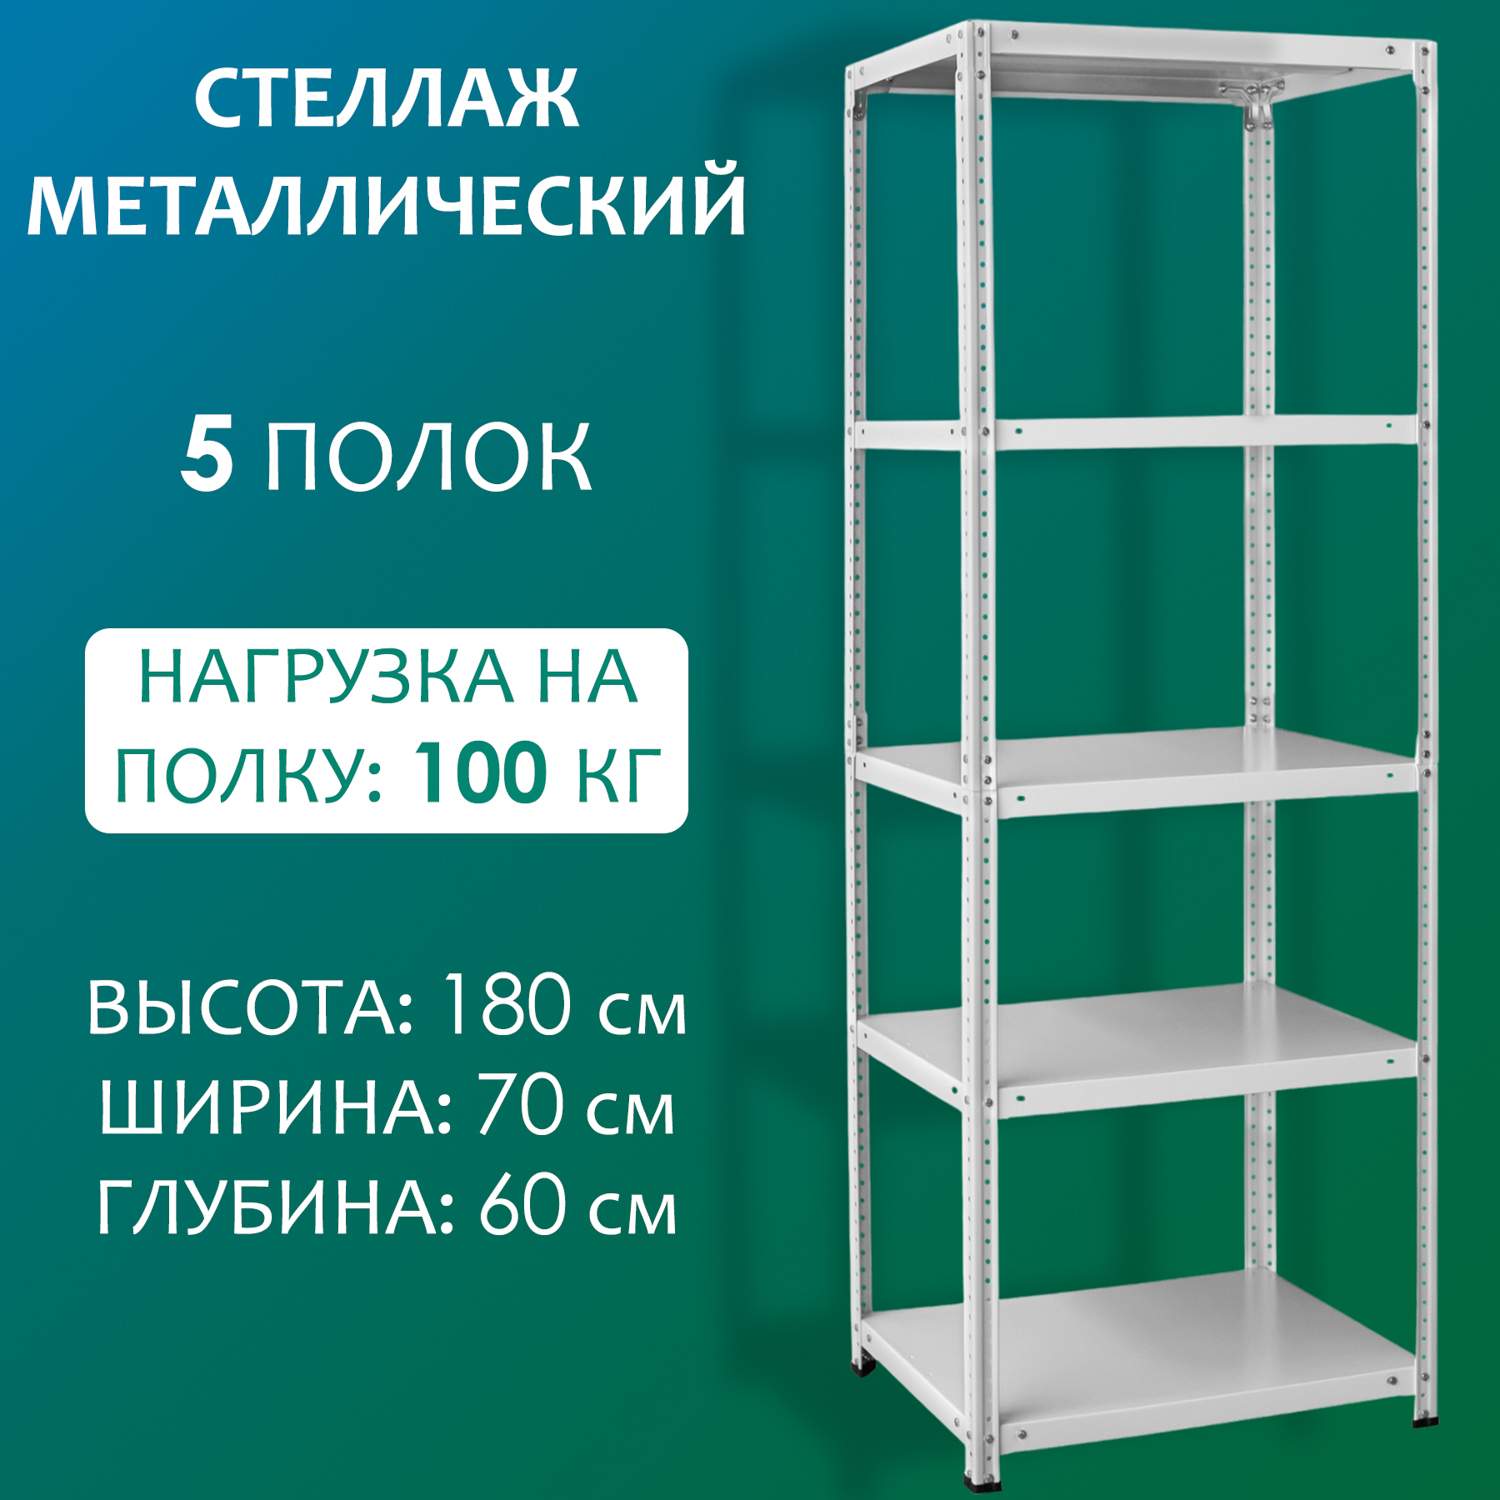 Стеллаж Стальной мир 180х70х60 см, 5 полок - купить в Москве, цены на Мегамаркет | 600012509825